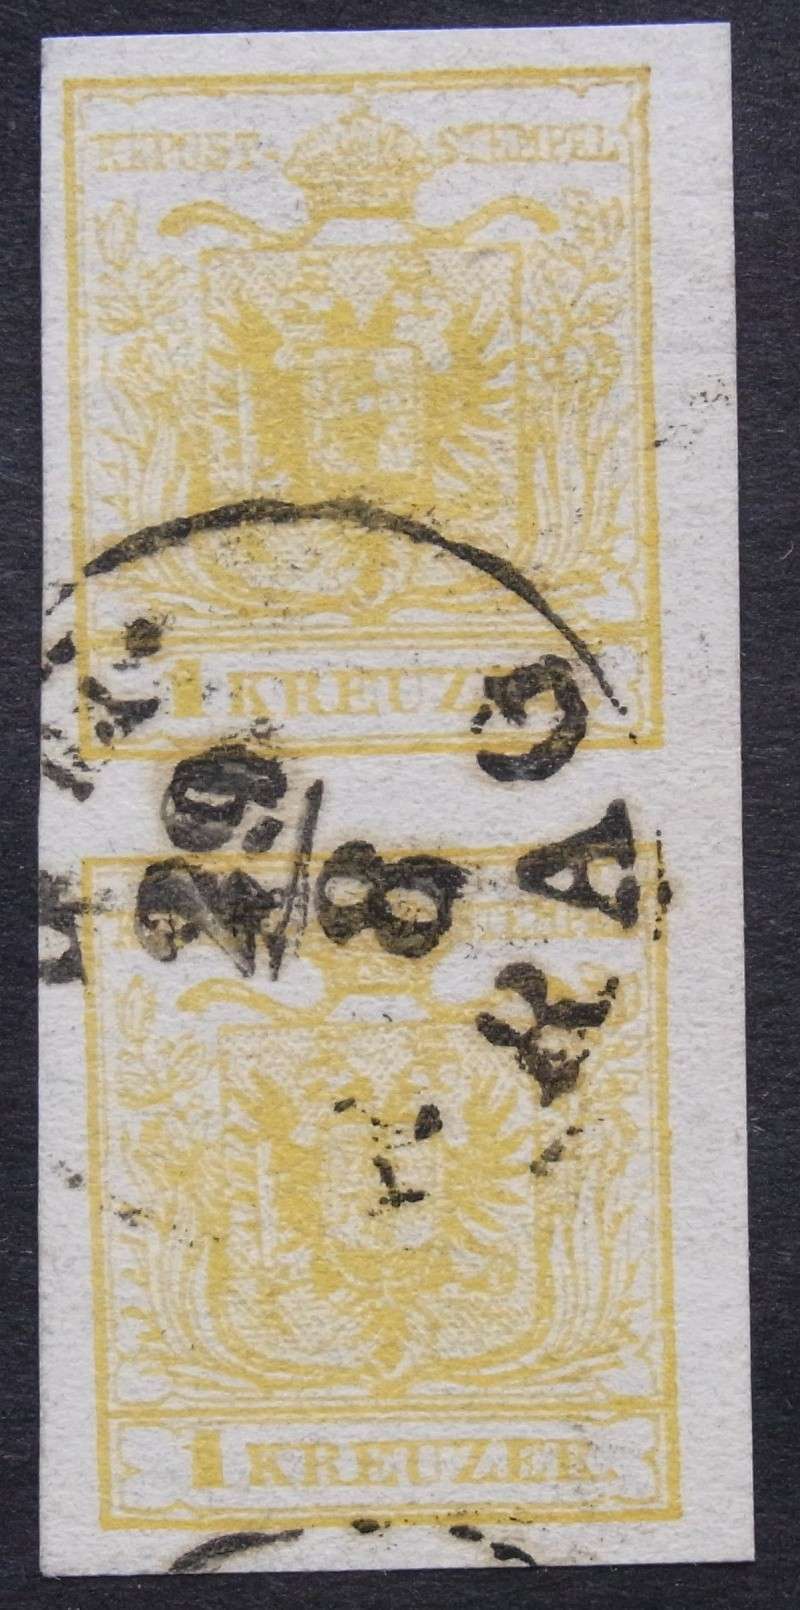 stempel - Die erste Österreichische Ausgabe 1850 Rimg0043